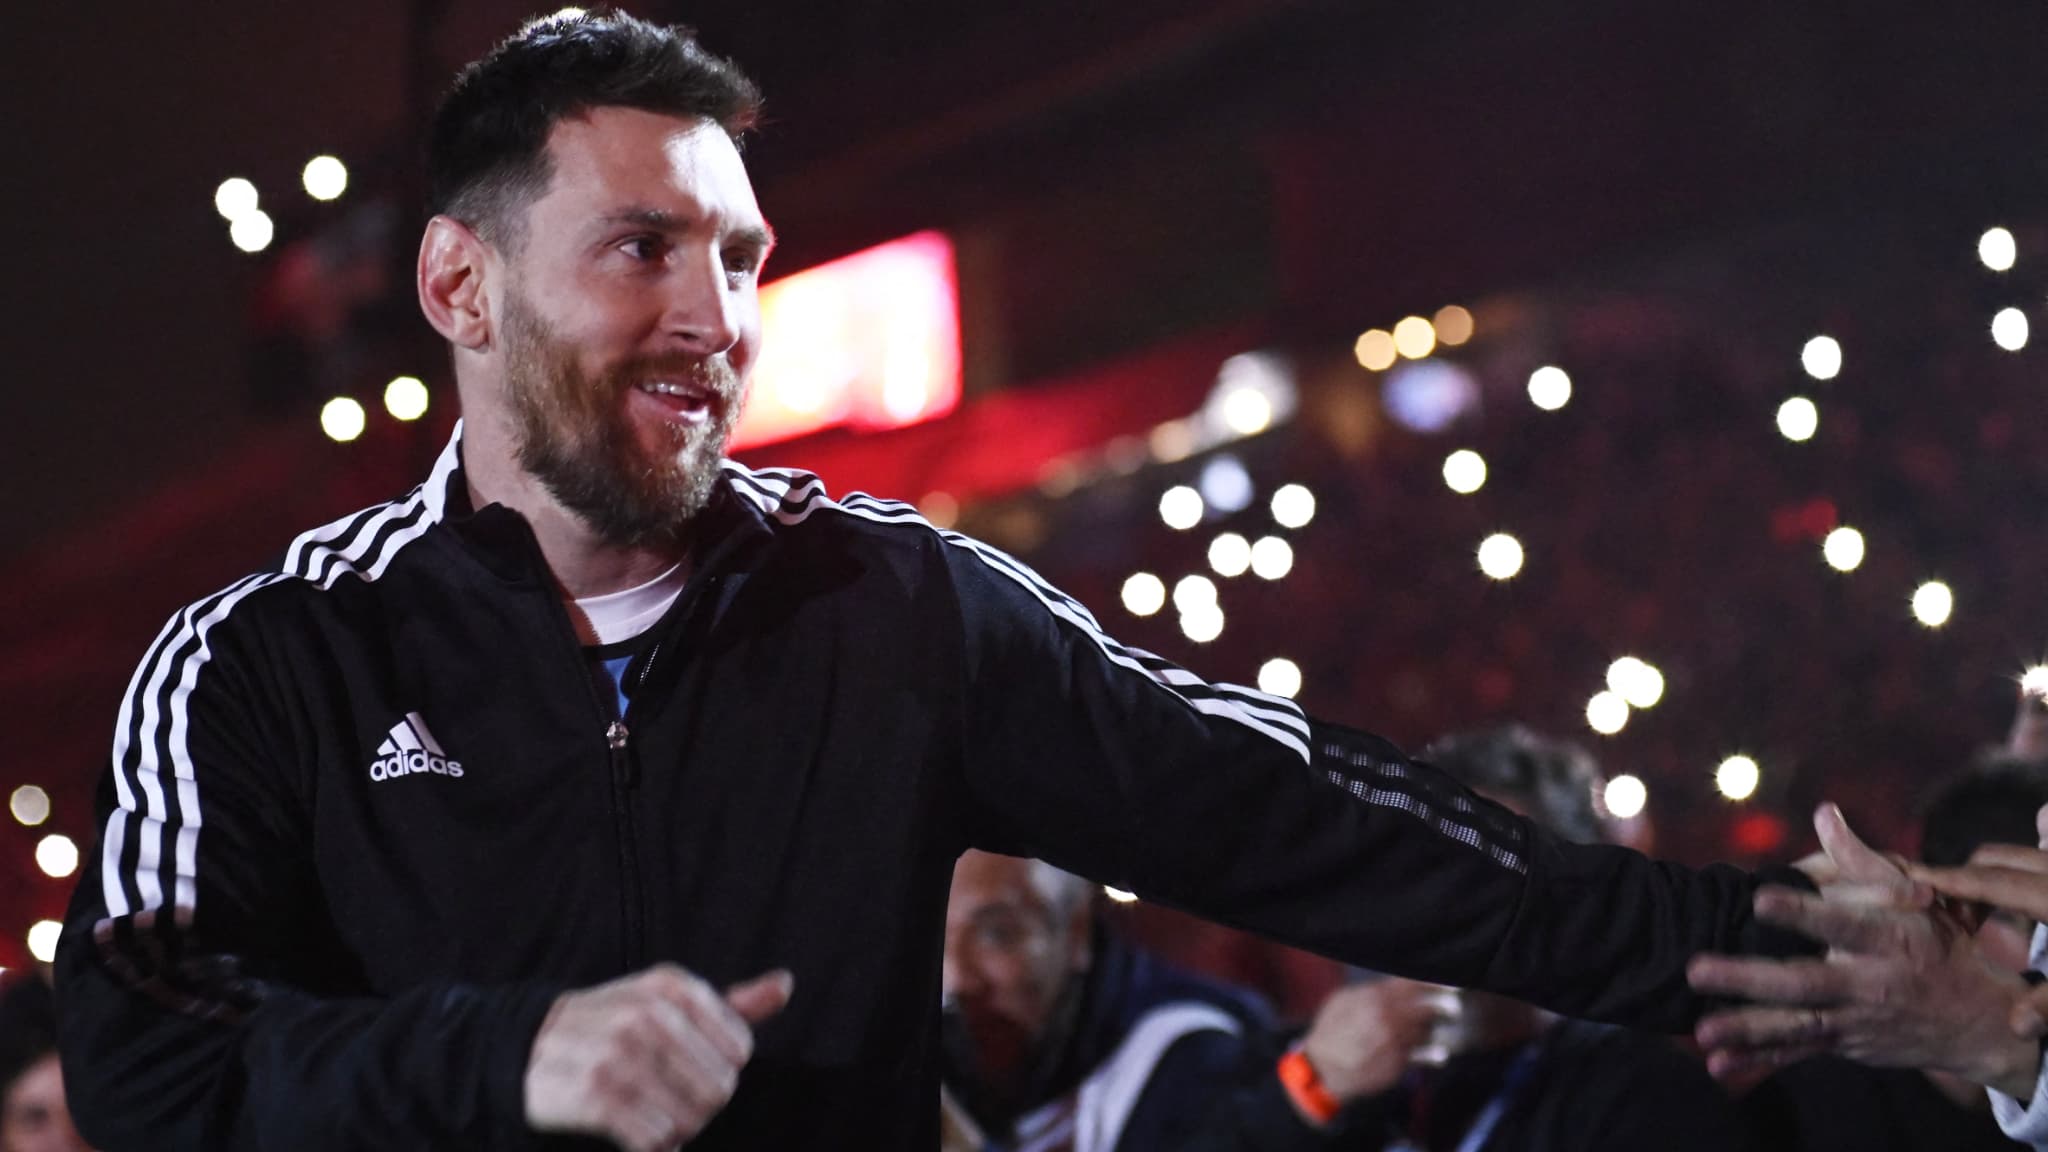 “Mi mentalidad no va a cambiar”, dijo Messi muy motivado antes de su llegada al Inter Miami